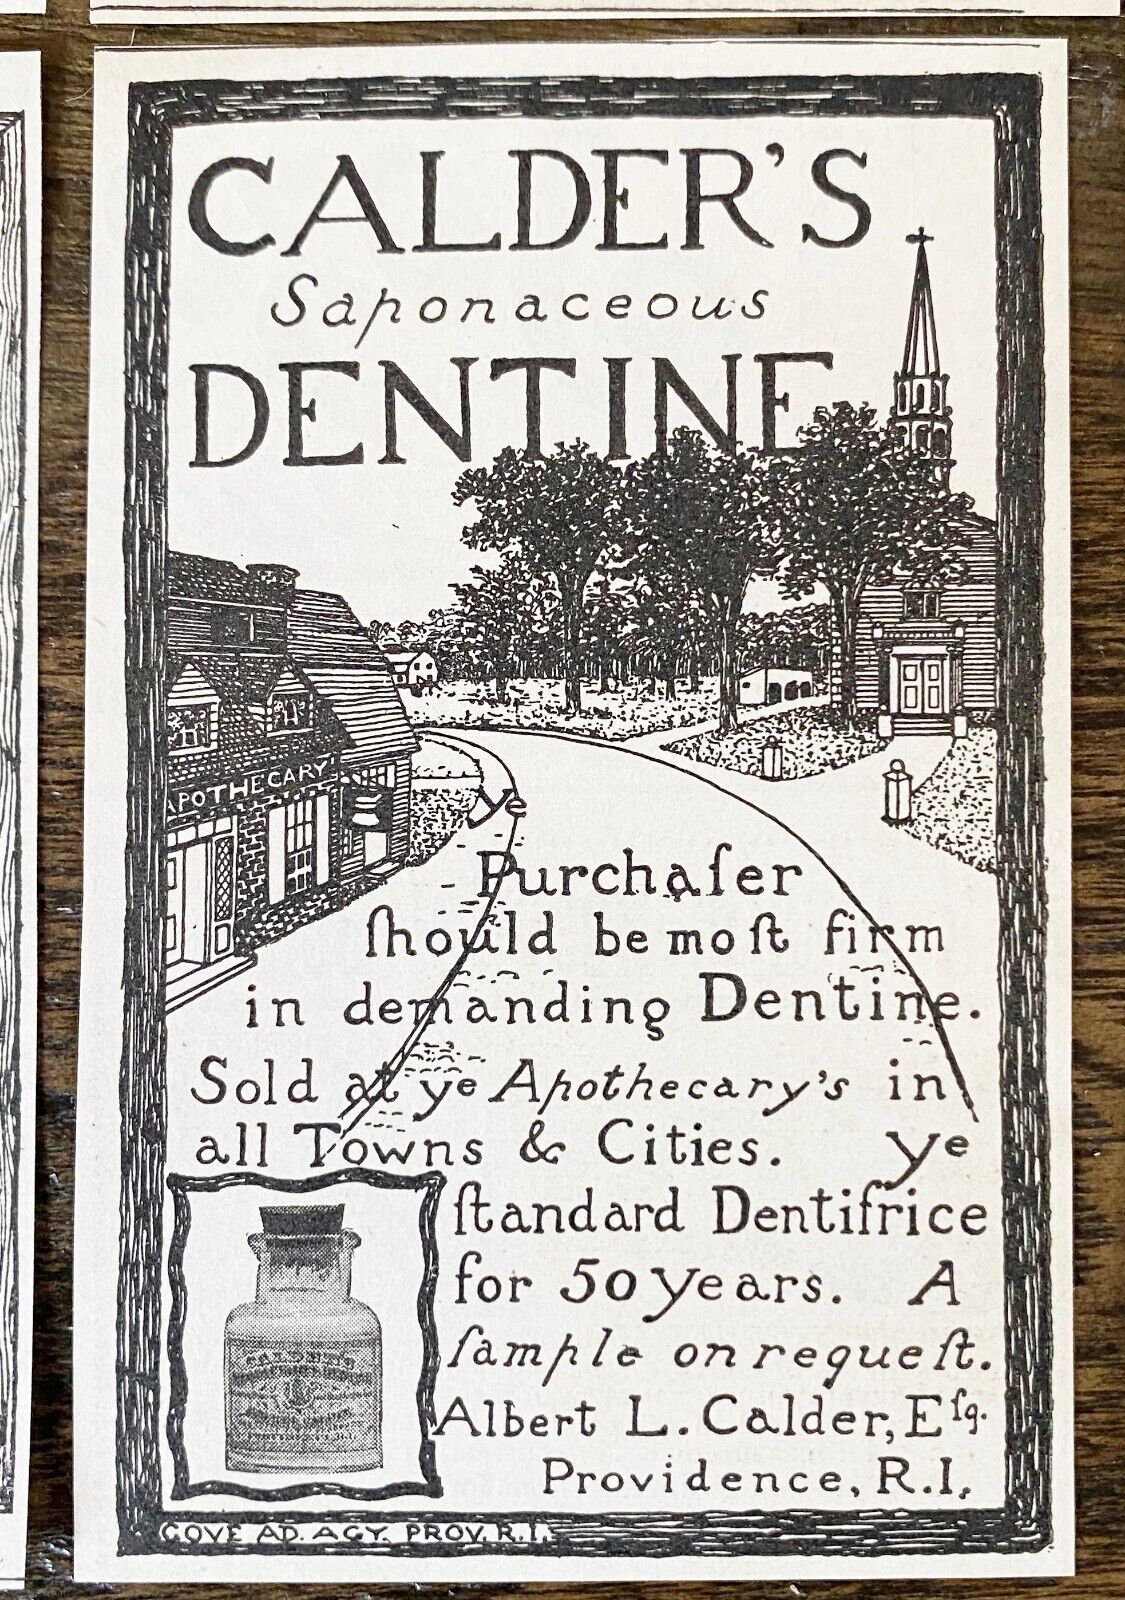 Antique 1890s CALDER'S DENTINE Tooth Powder Dentifrice Typography Print Ad Lot10 Без бренда - фотография #9